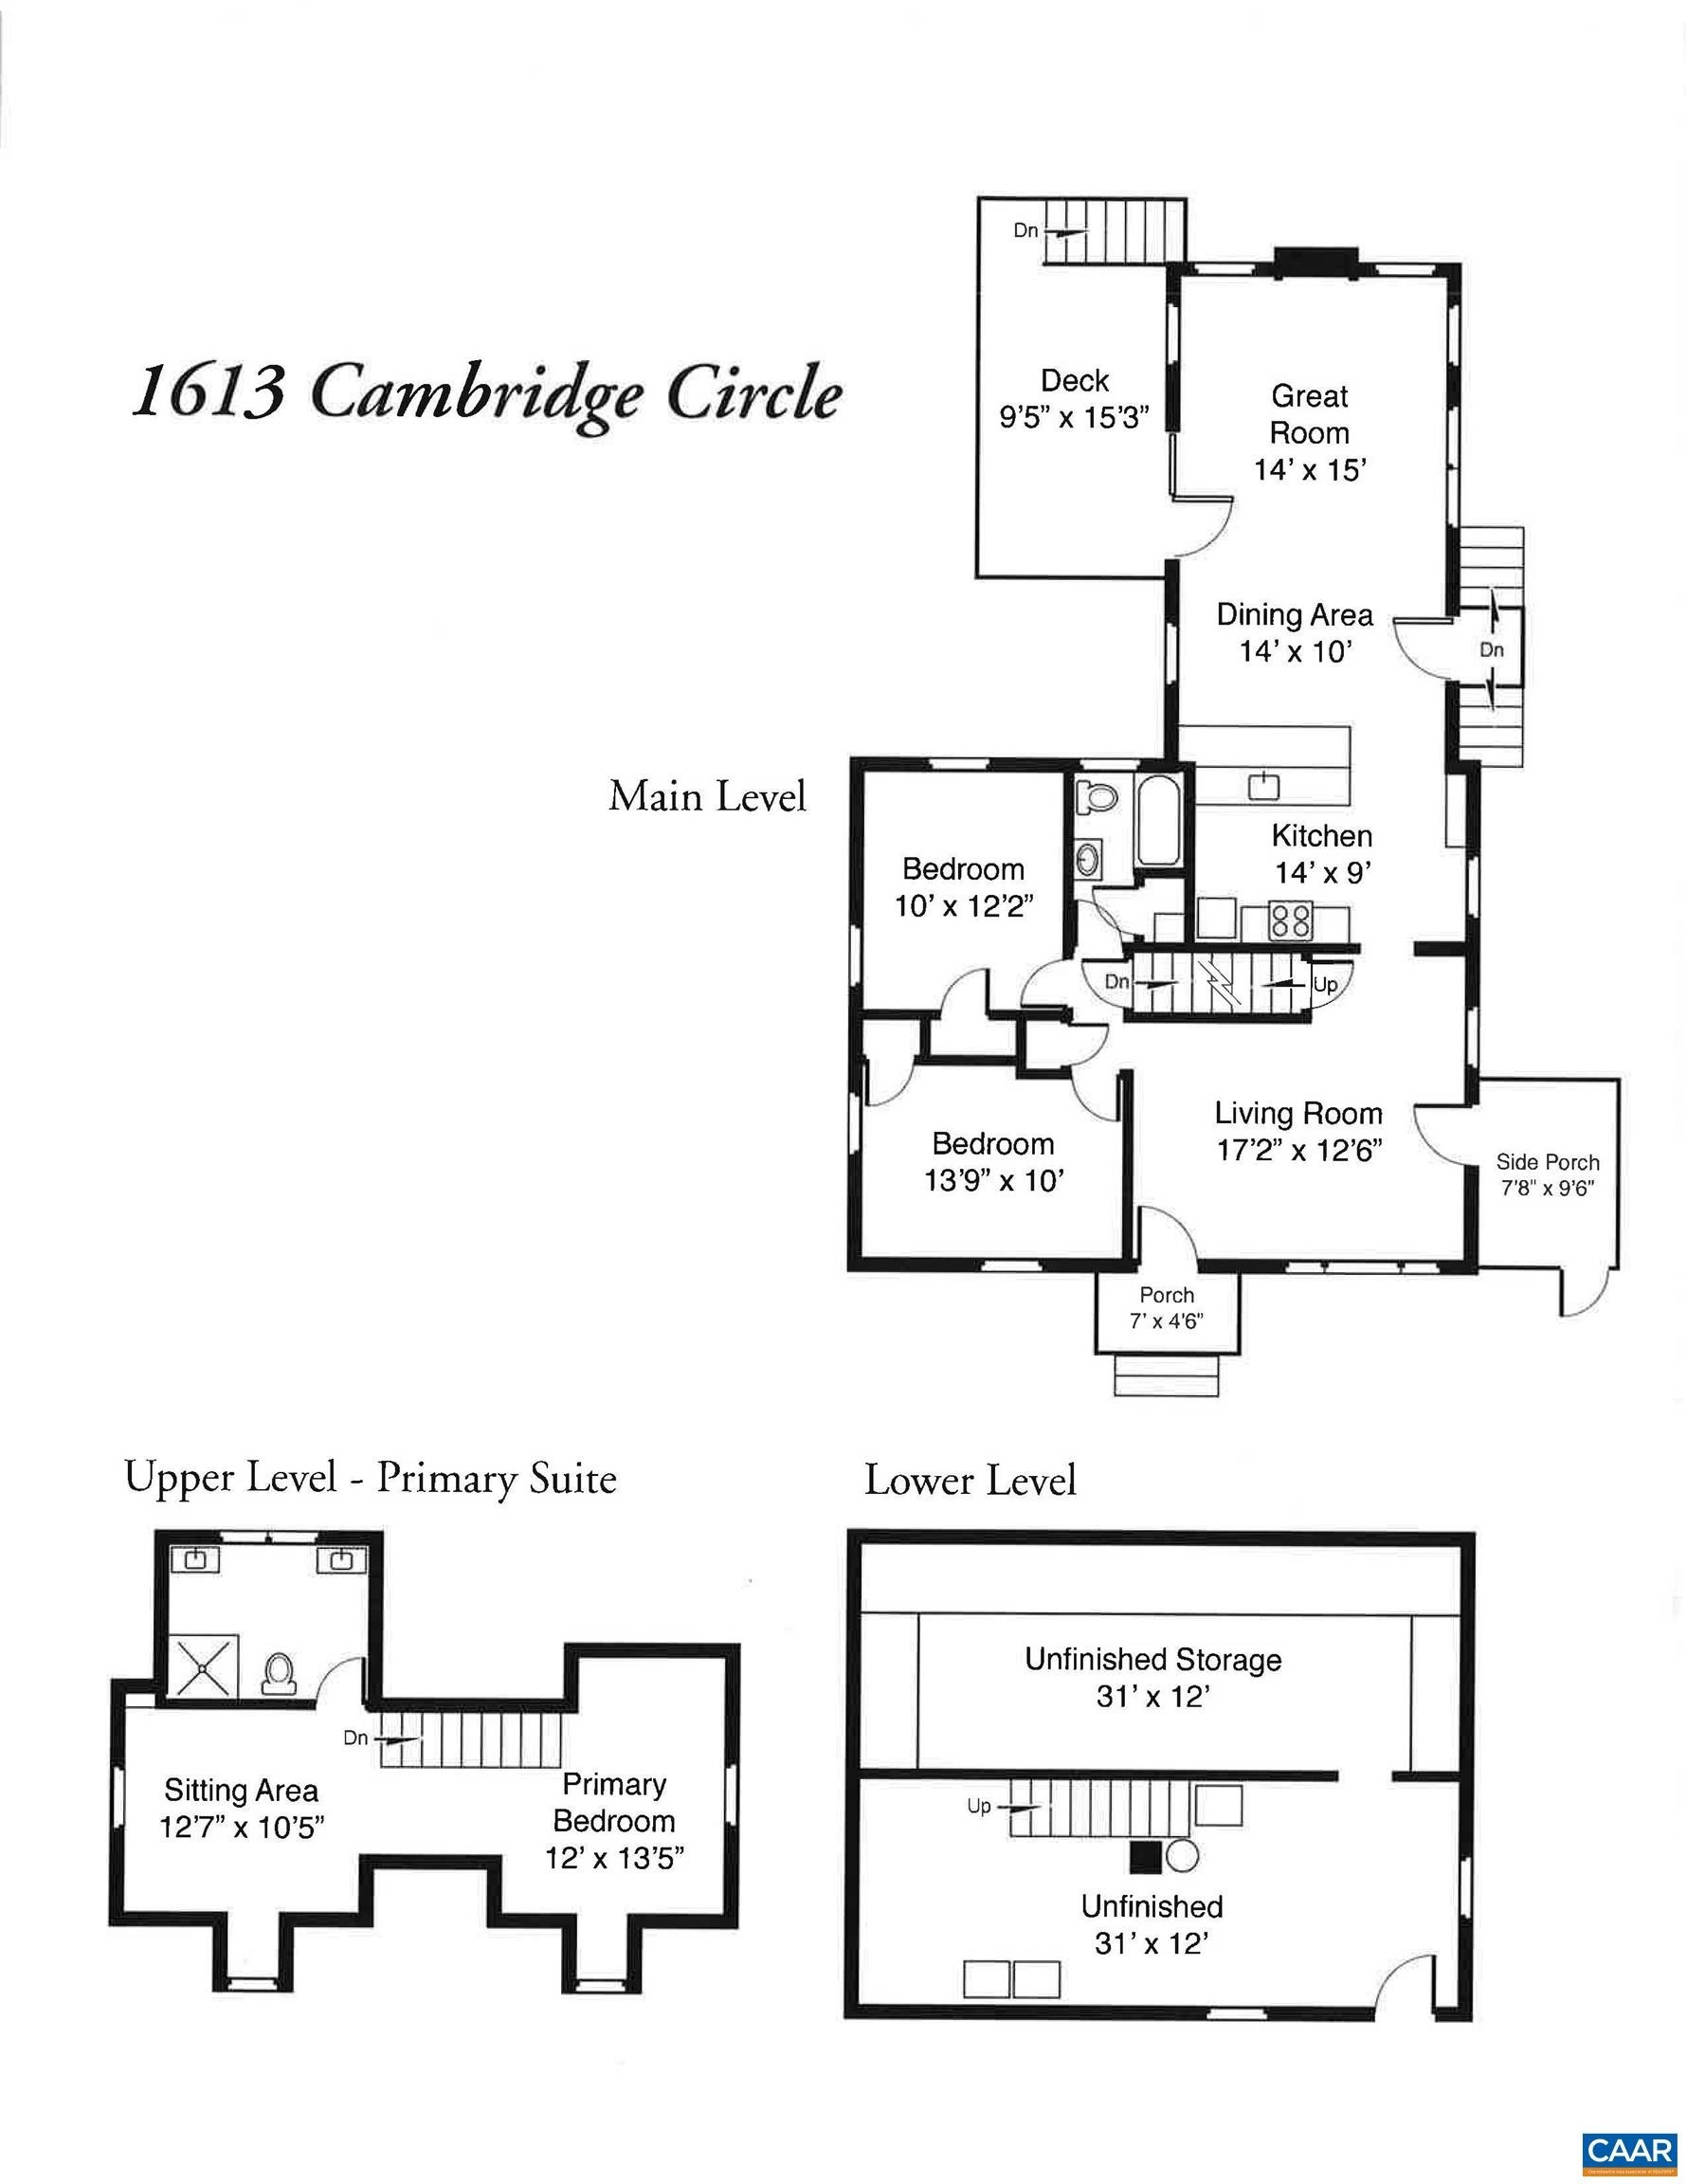 24. 1613 Cambridge Cir